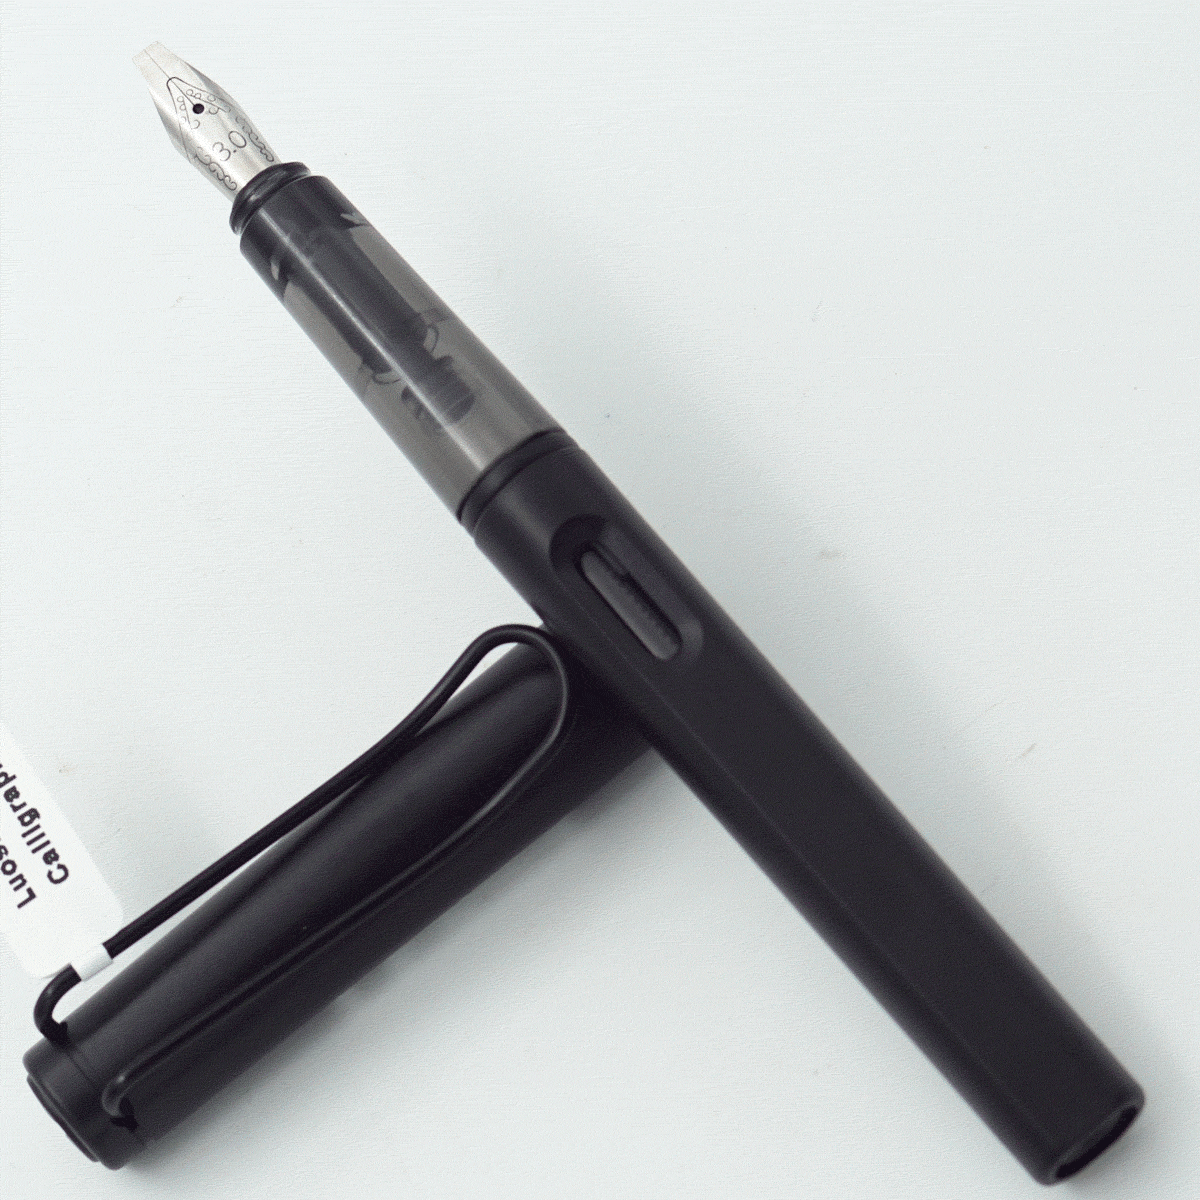 Luoshi 3987 Black Color Body With Cap 3.0 Nib Converter Type Calligraphy Fountain Pen SKU 24234